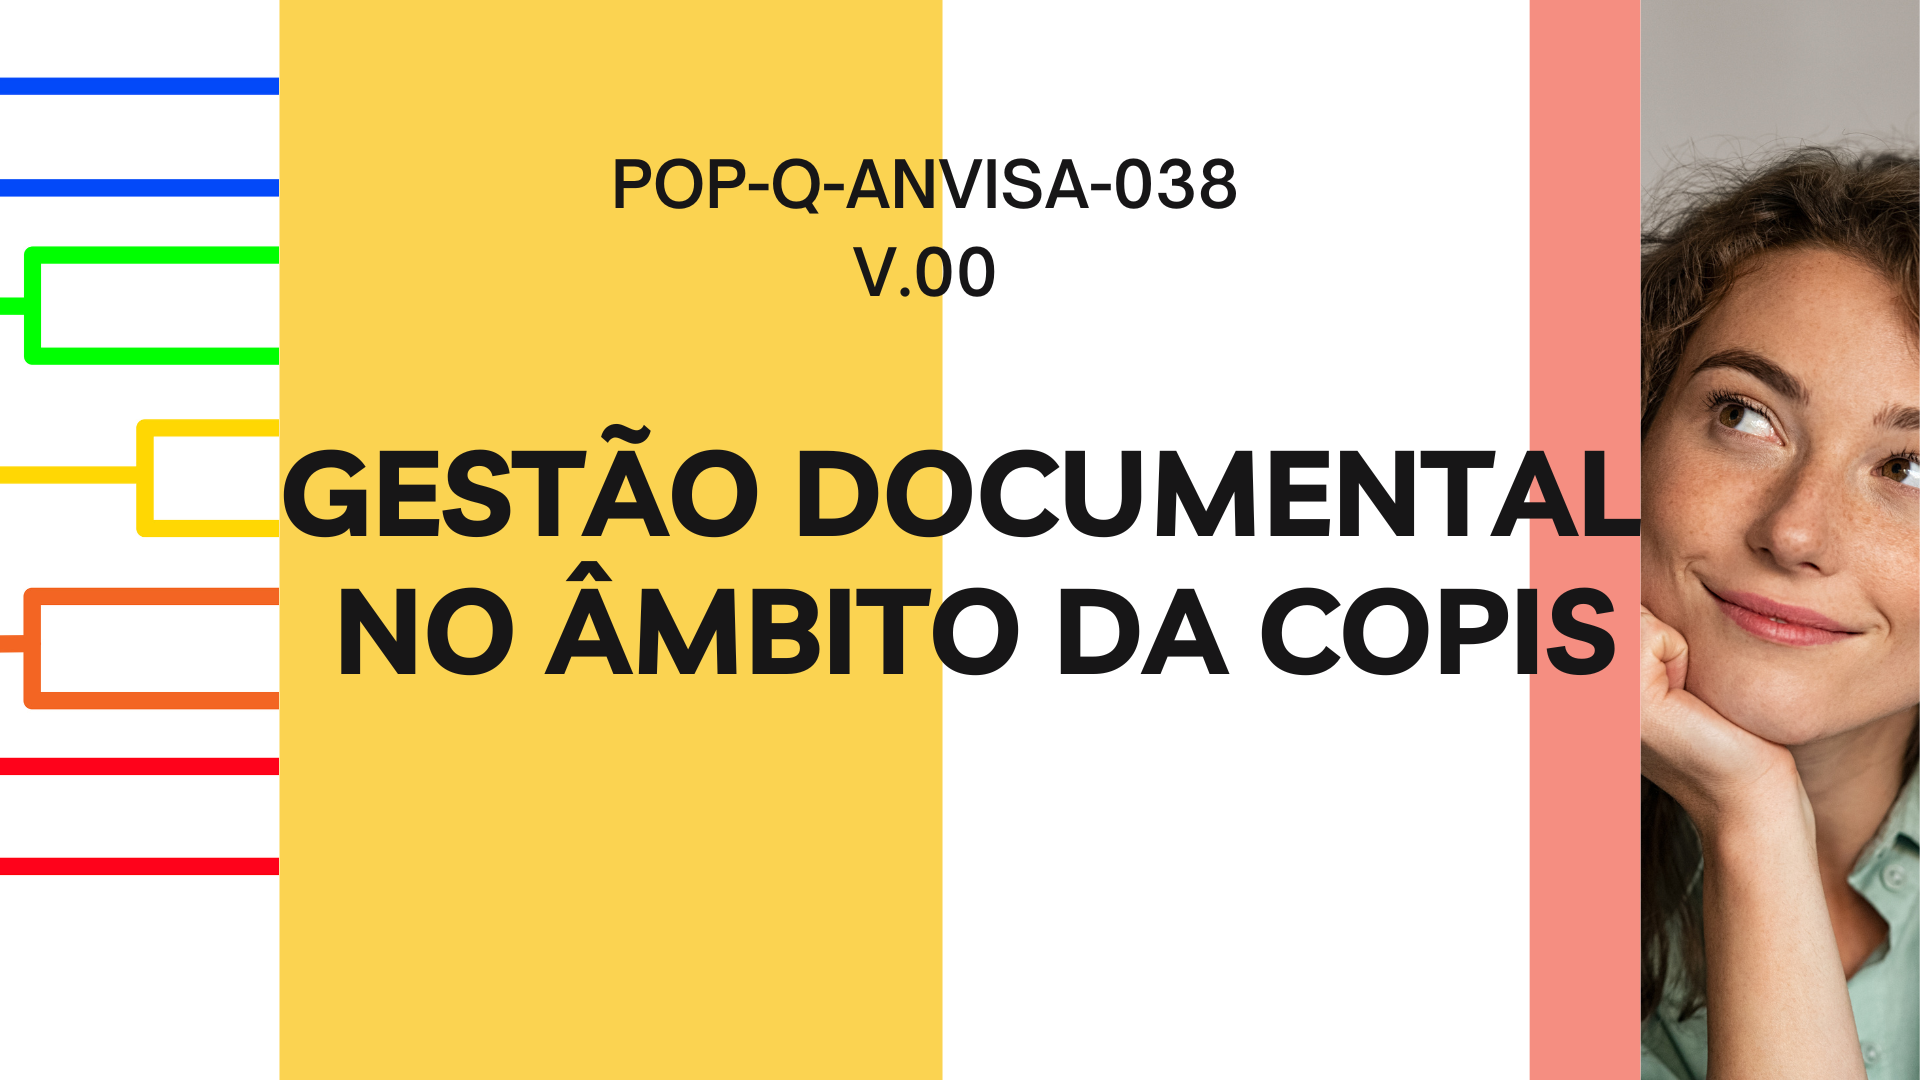 POP-Q-ANVISA-038 - GESTÃO DOCUMENTAL NO ÂMBITO DA COPIS